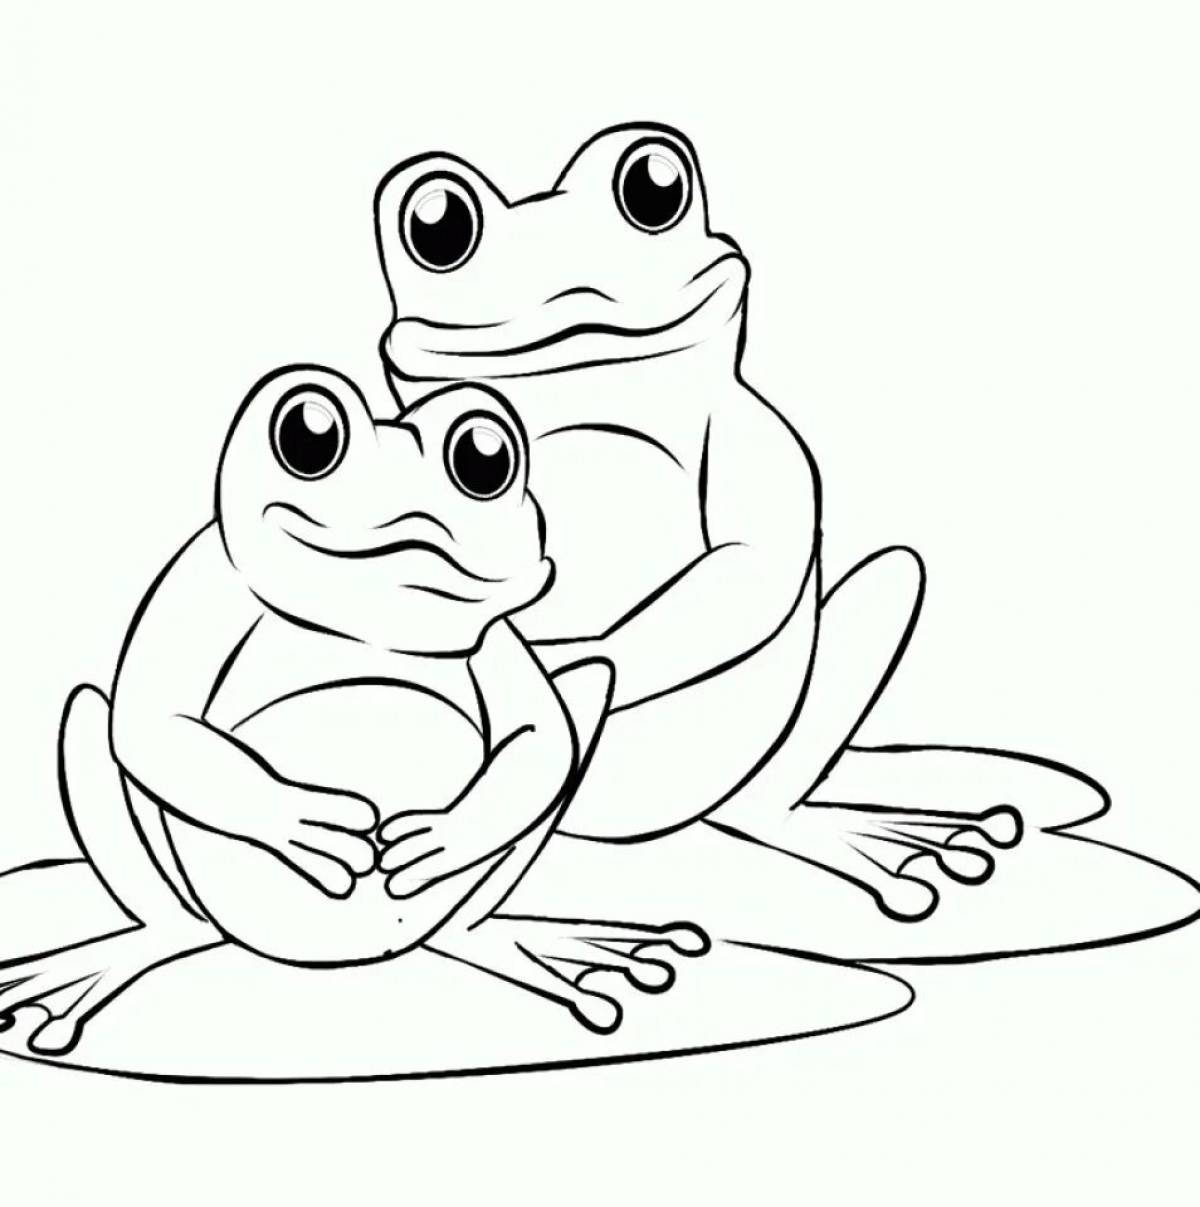 Cartoon frog #3